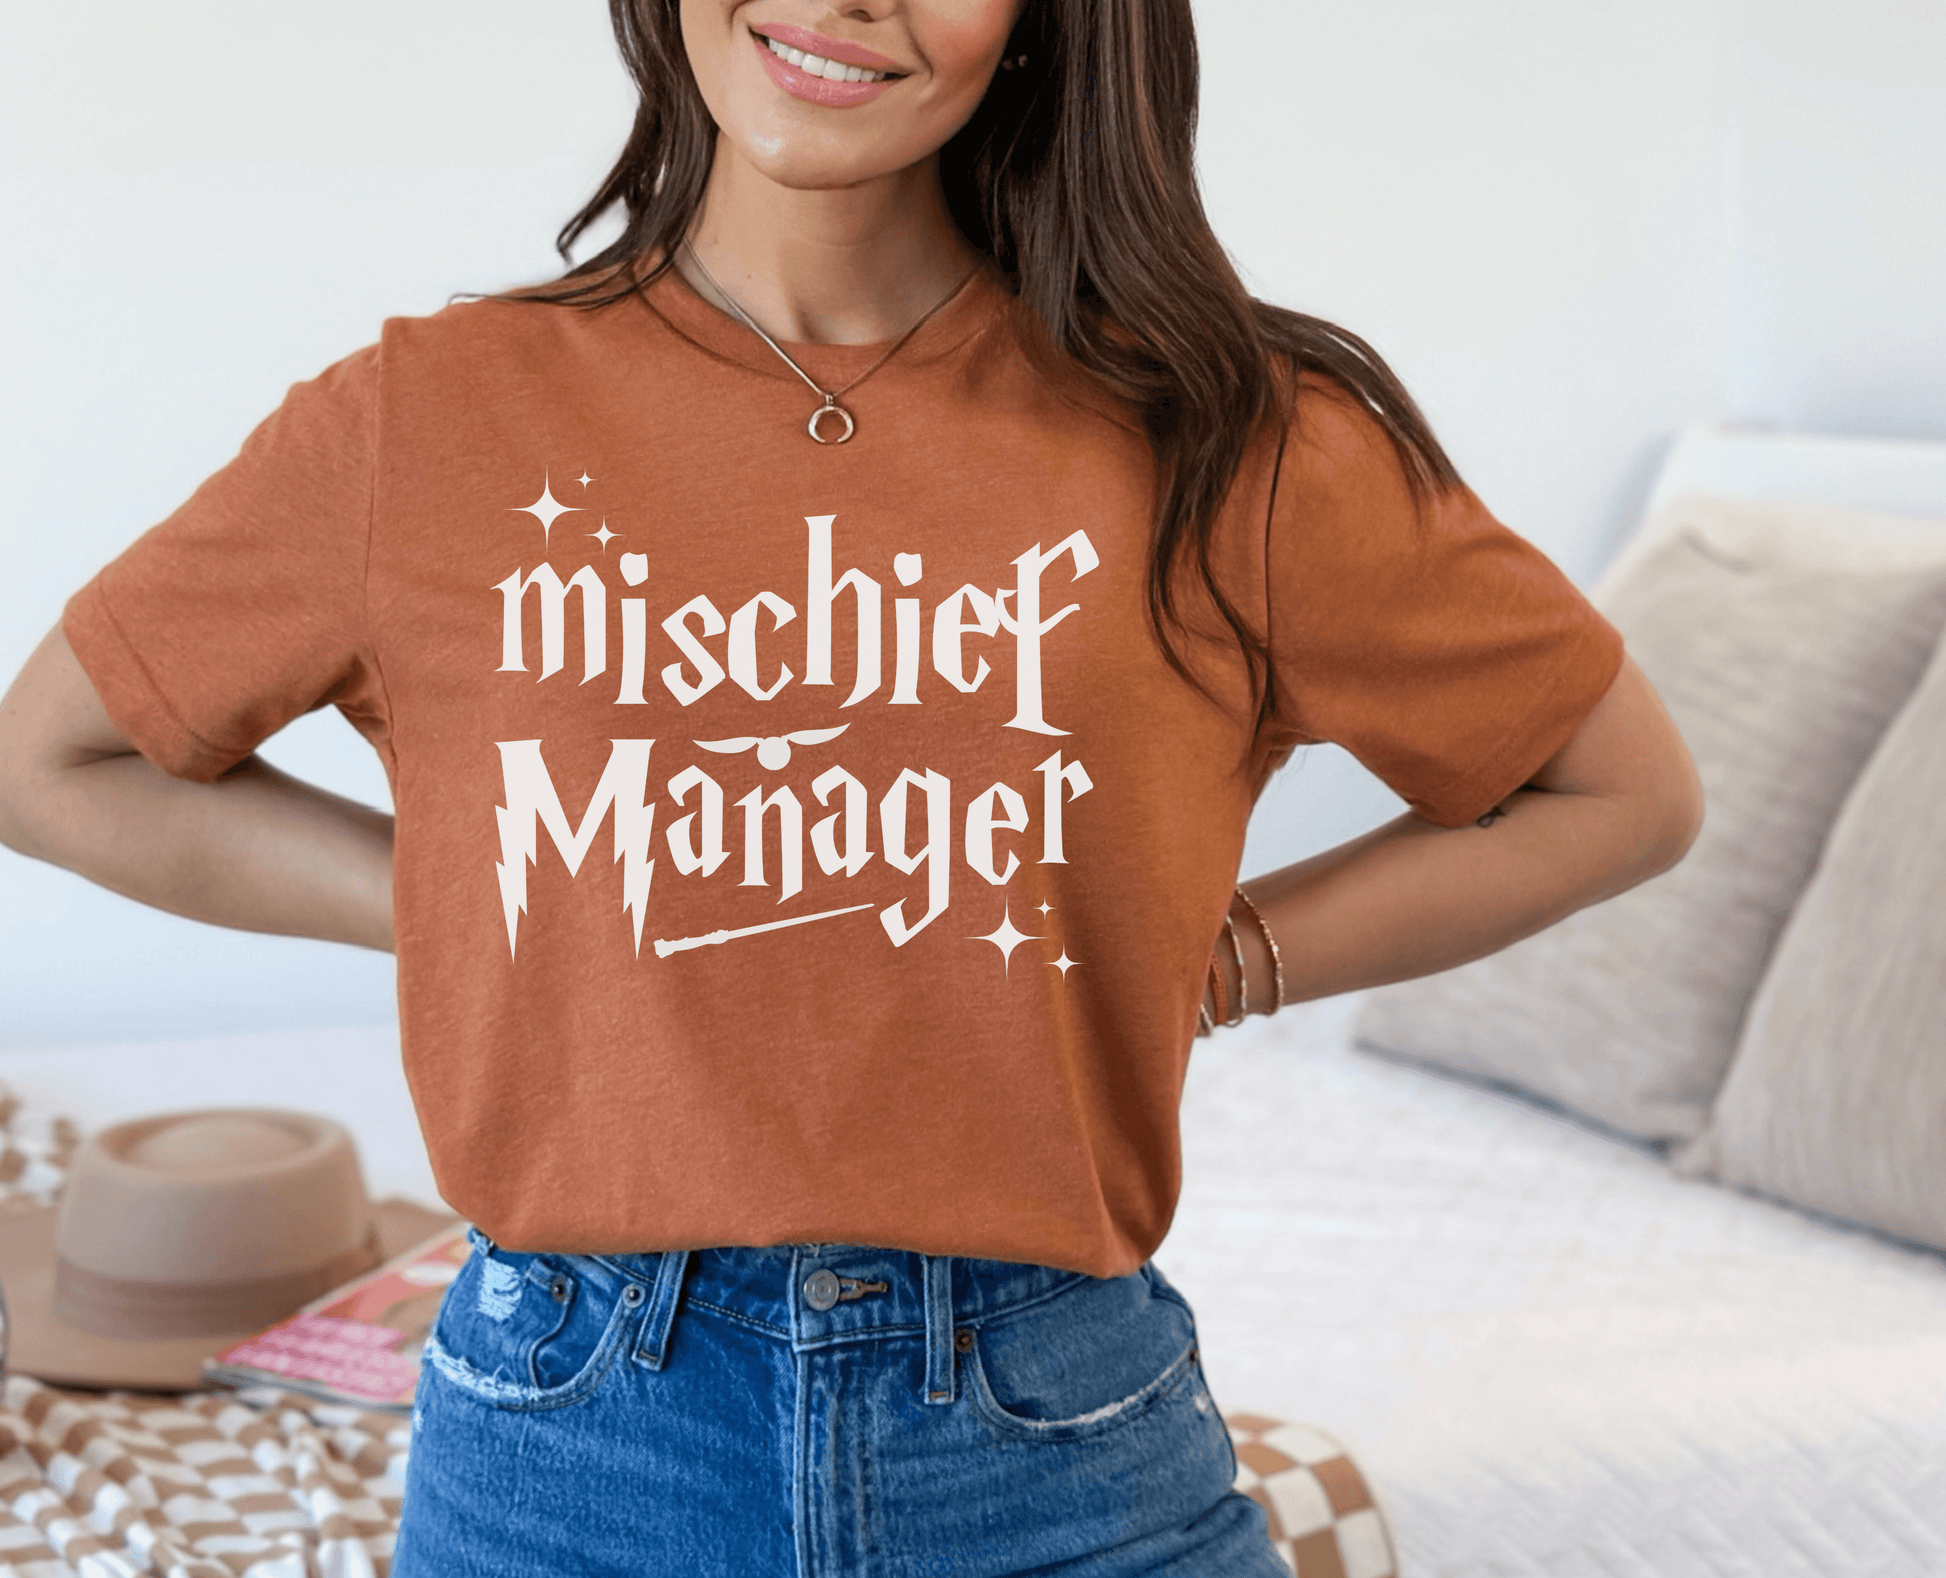 Mischief Manager Wizard Shirt - BentleyBlueCo